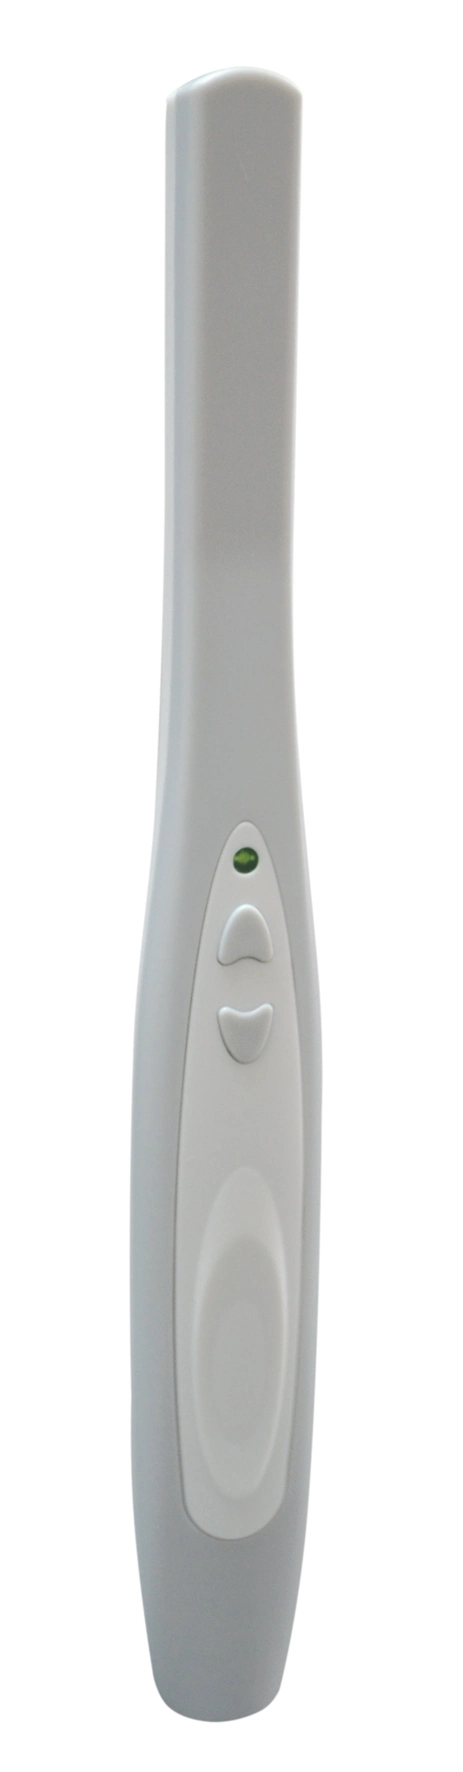 Лучшая продажа Пурпурная USB-проволока Стоматологическая интраоральная камера MD740